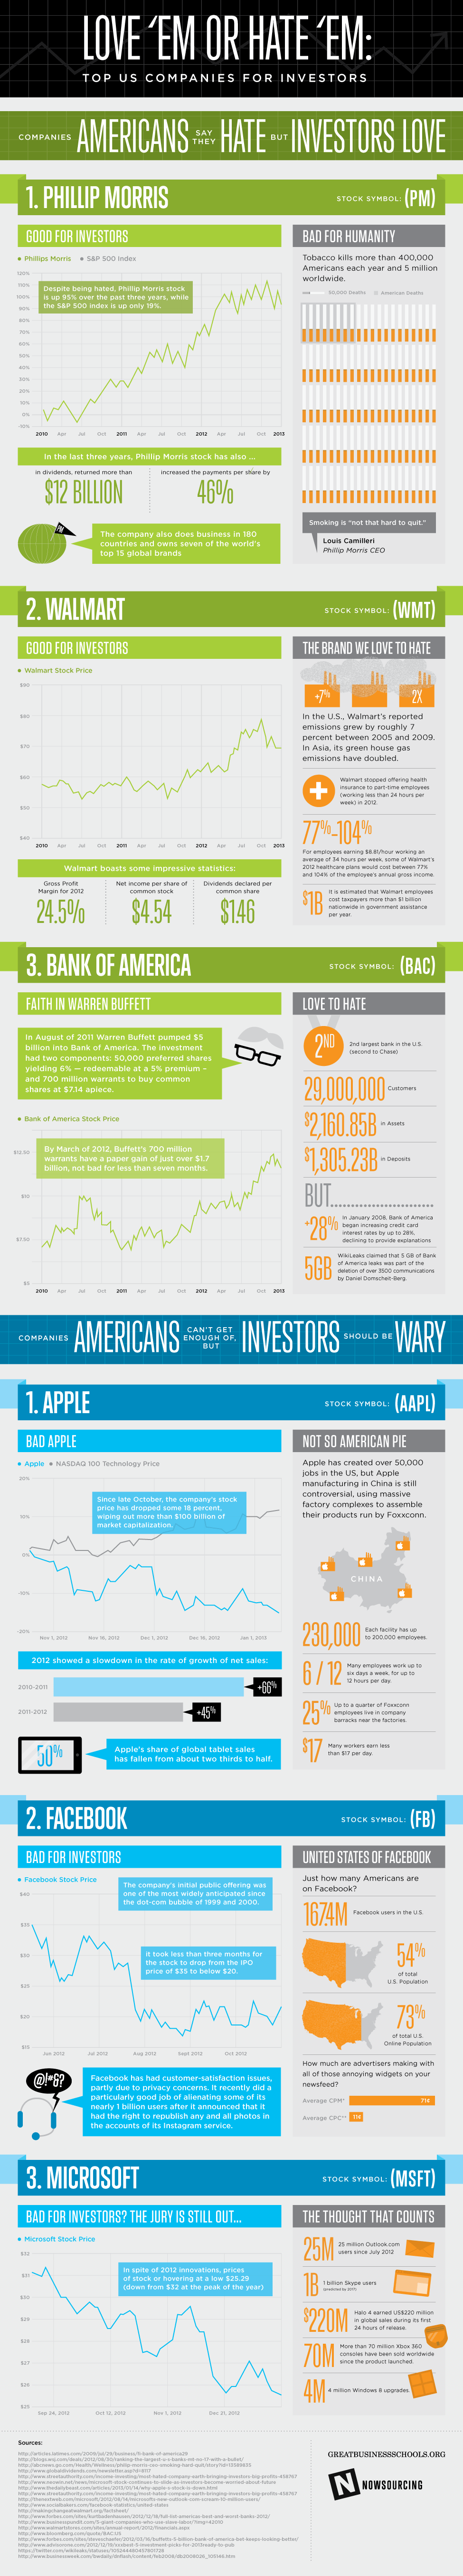 Love 'Em or Hate 'Em: Top US Companies for Investors